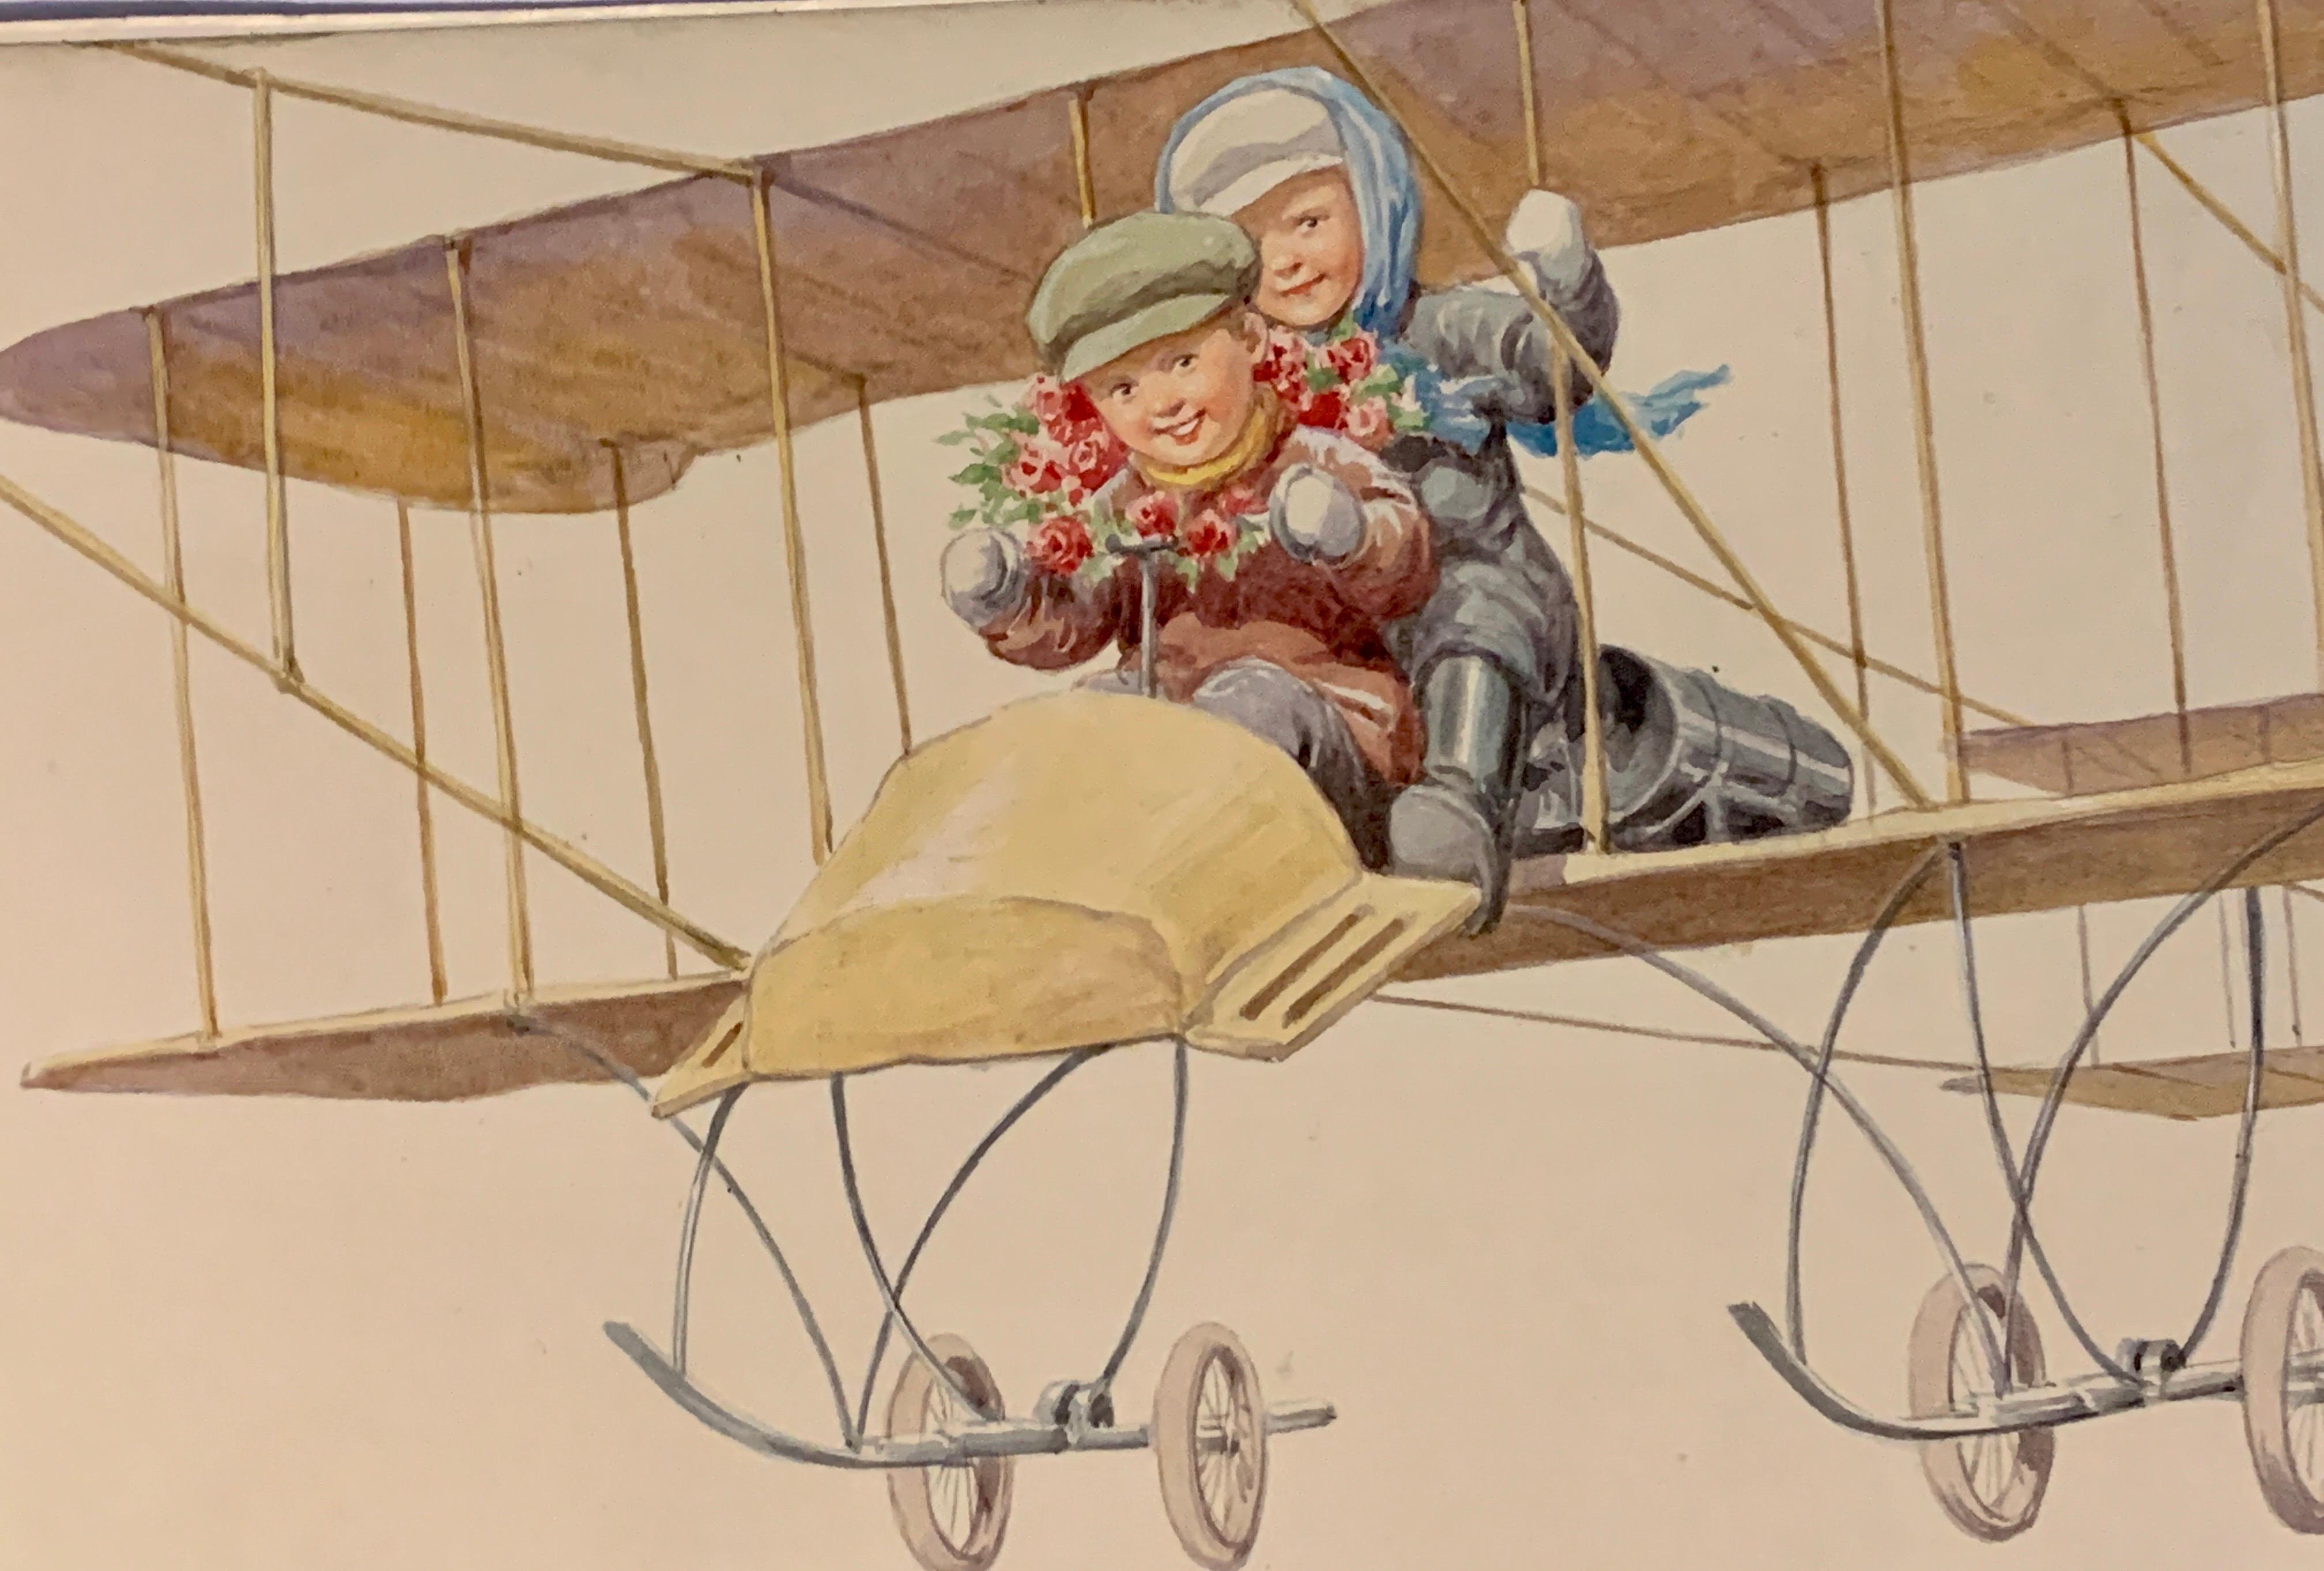 Deutsche Kinder aus dem späten 19. Jahrhundert, die in einem Flugzeug fliegen, – Art von Karl Feiertag